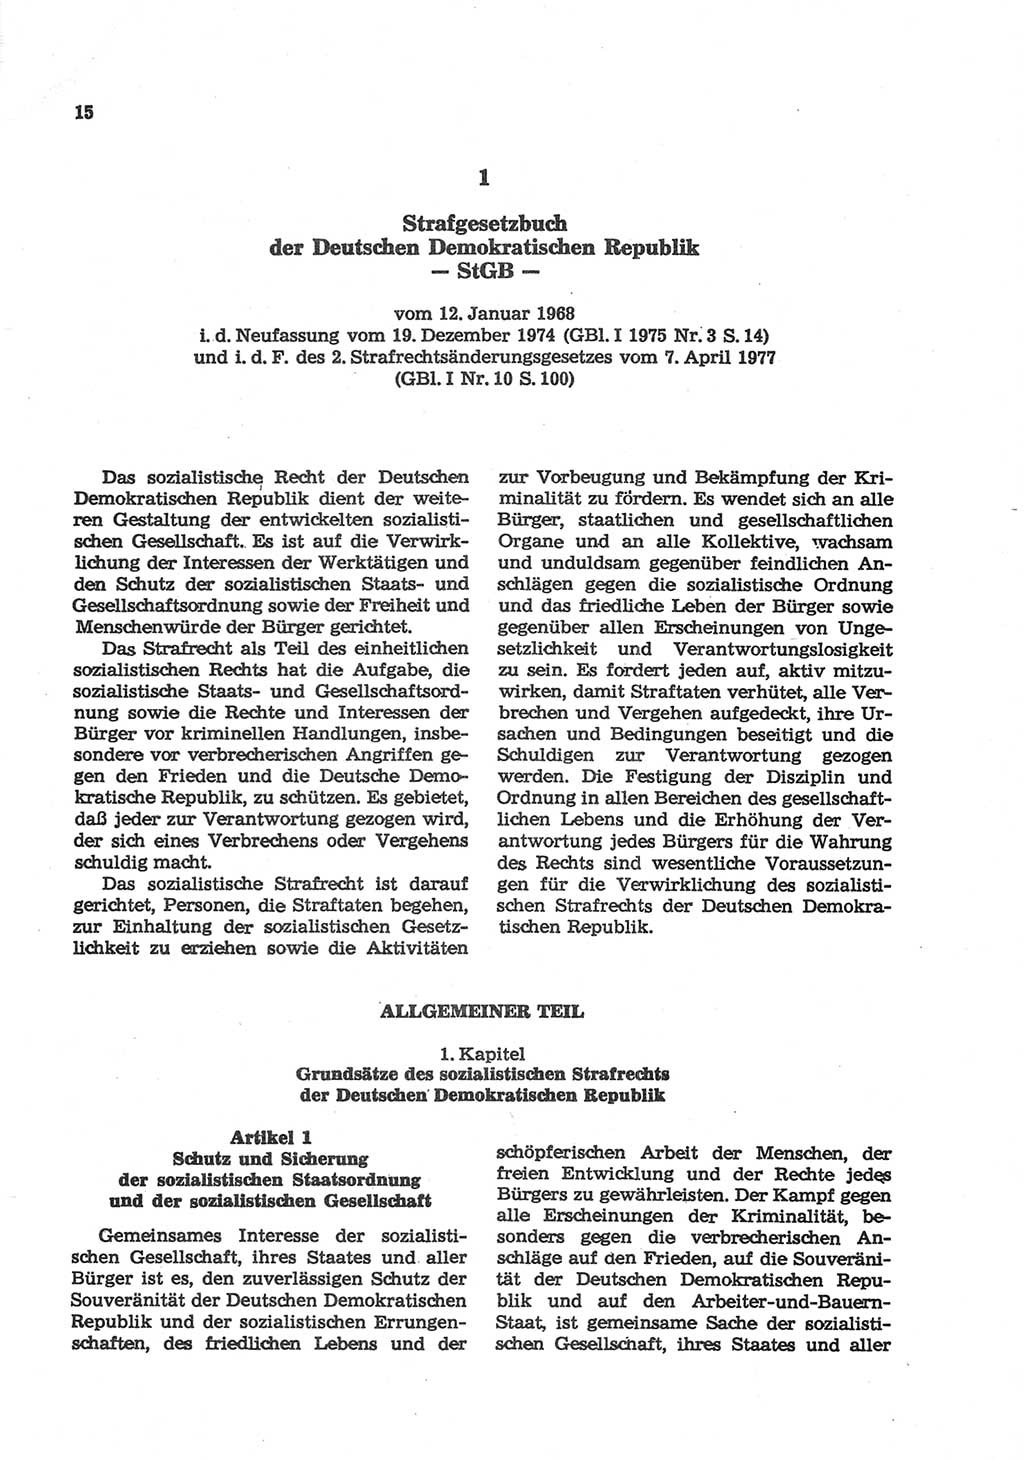 Strafgesetzbuch (StGB) der Deutschen Demokratischen Republik (DDR) und angrenzende Gesetze und Bestimmungen 1977, Seite 15 (StGB DDR Ges. Best. 1977, S. 15)